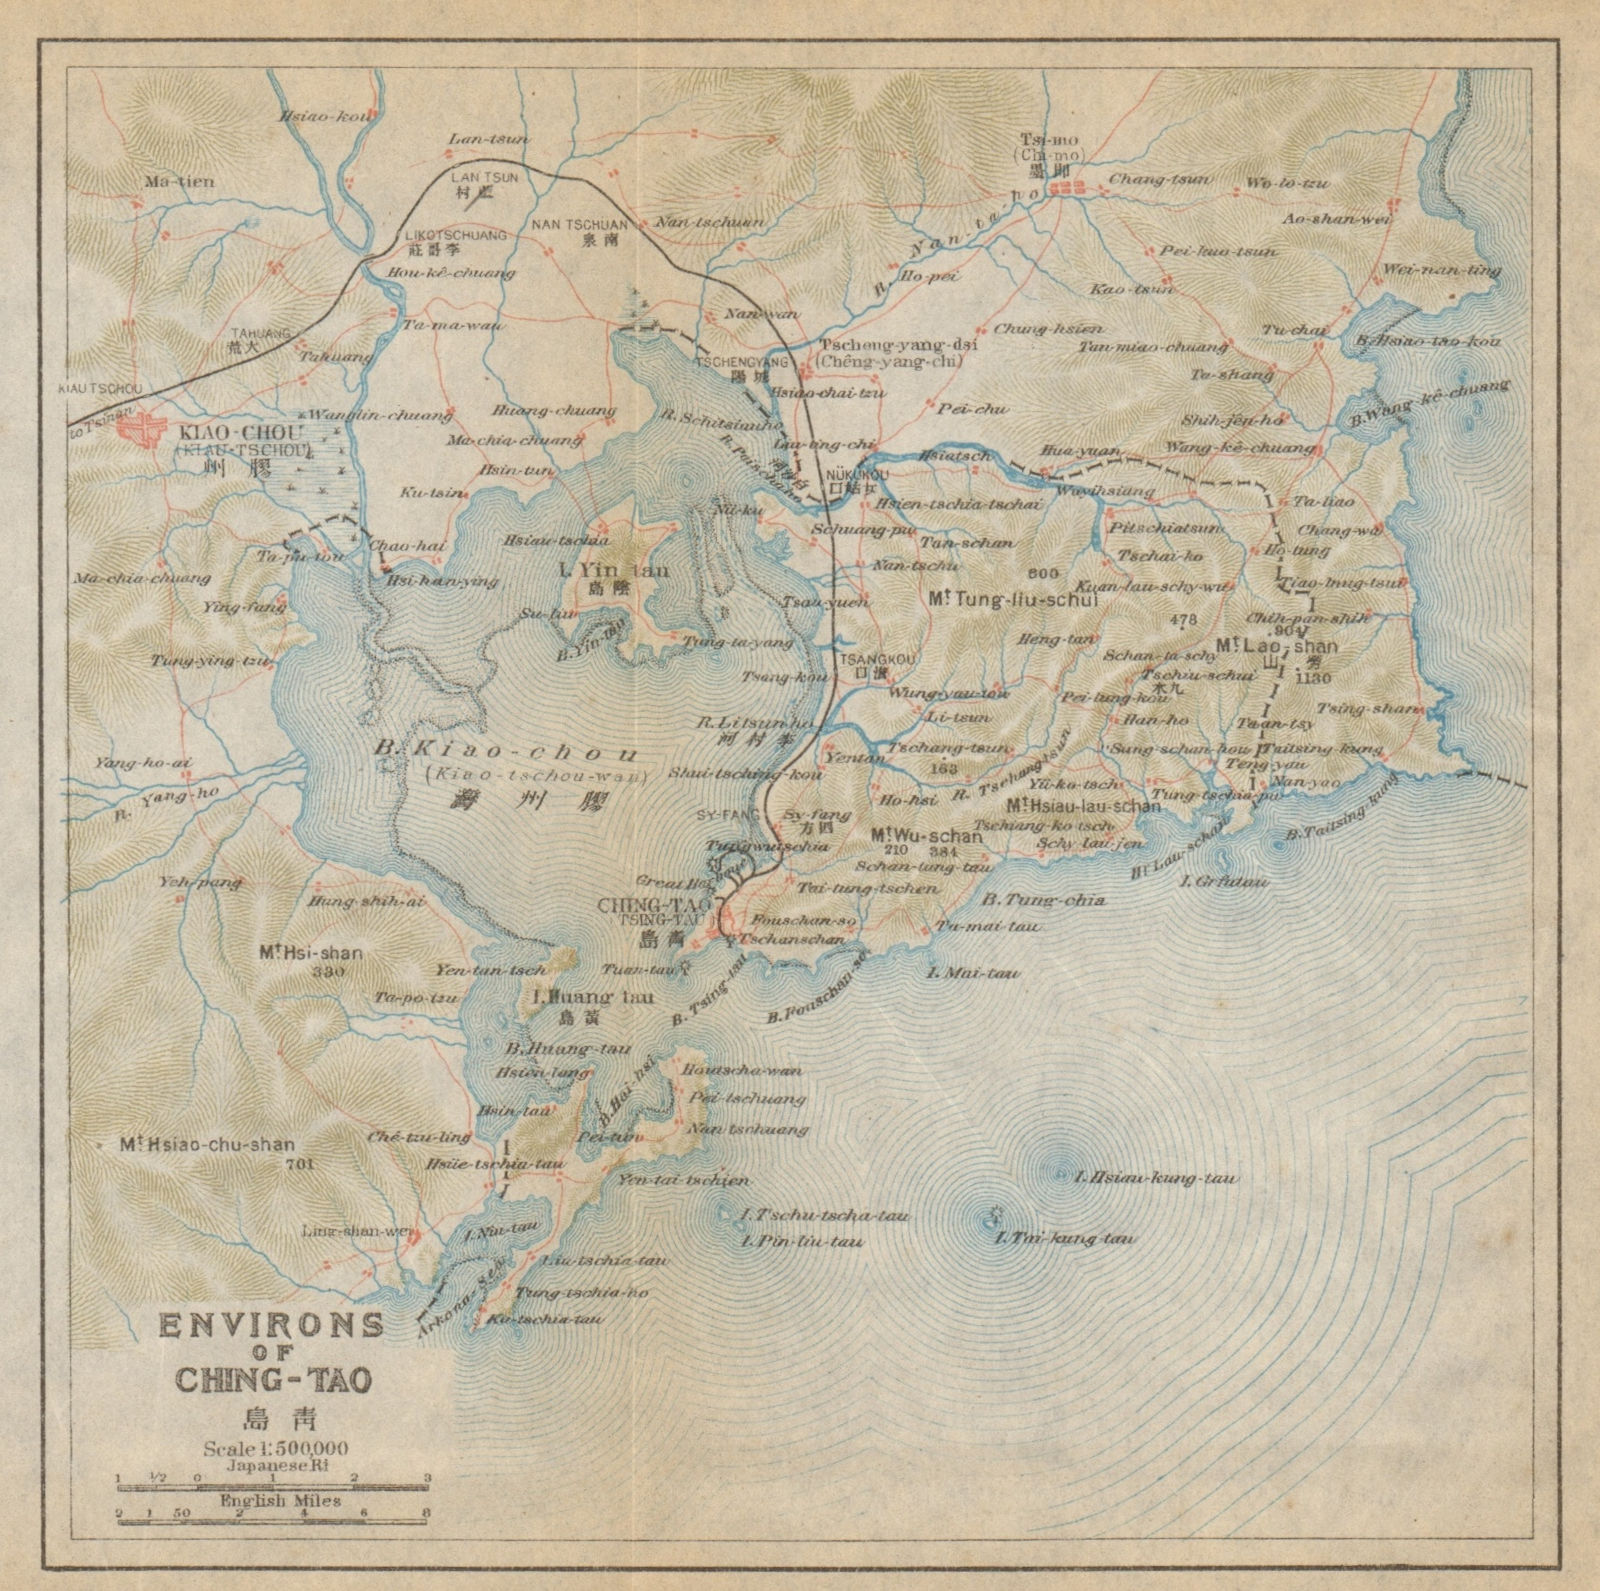 Associate Product 'Environs of Ching-tao'. Qingdao & Jiaozhou Bay antique map. China 1915